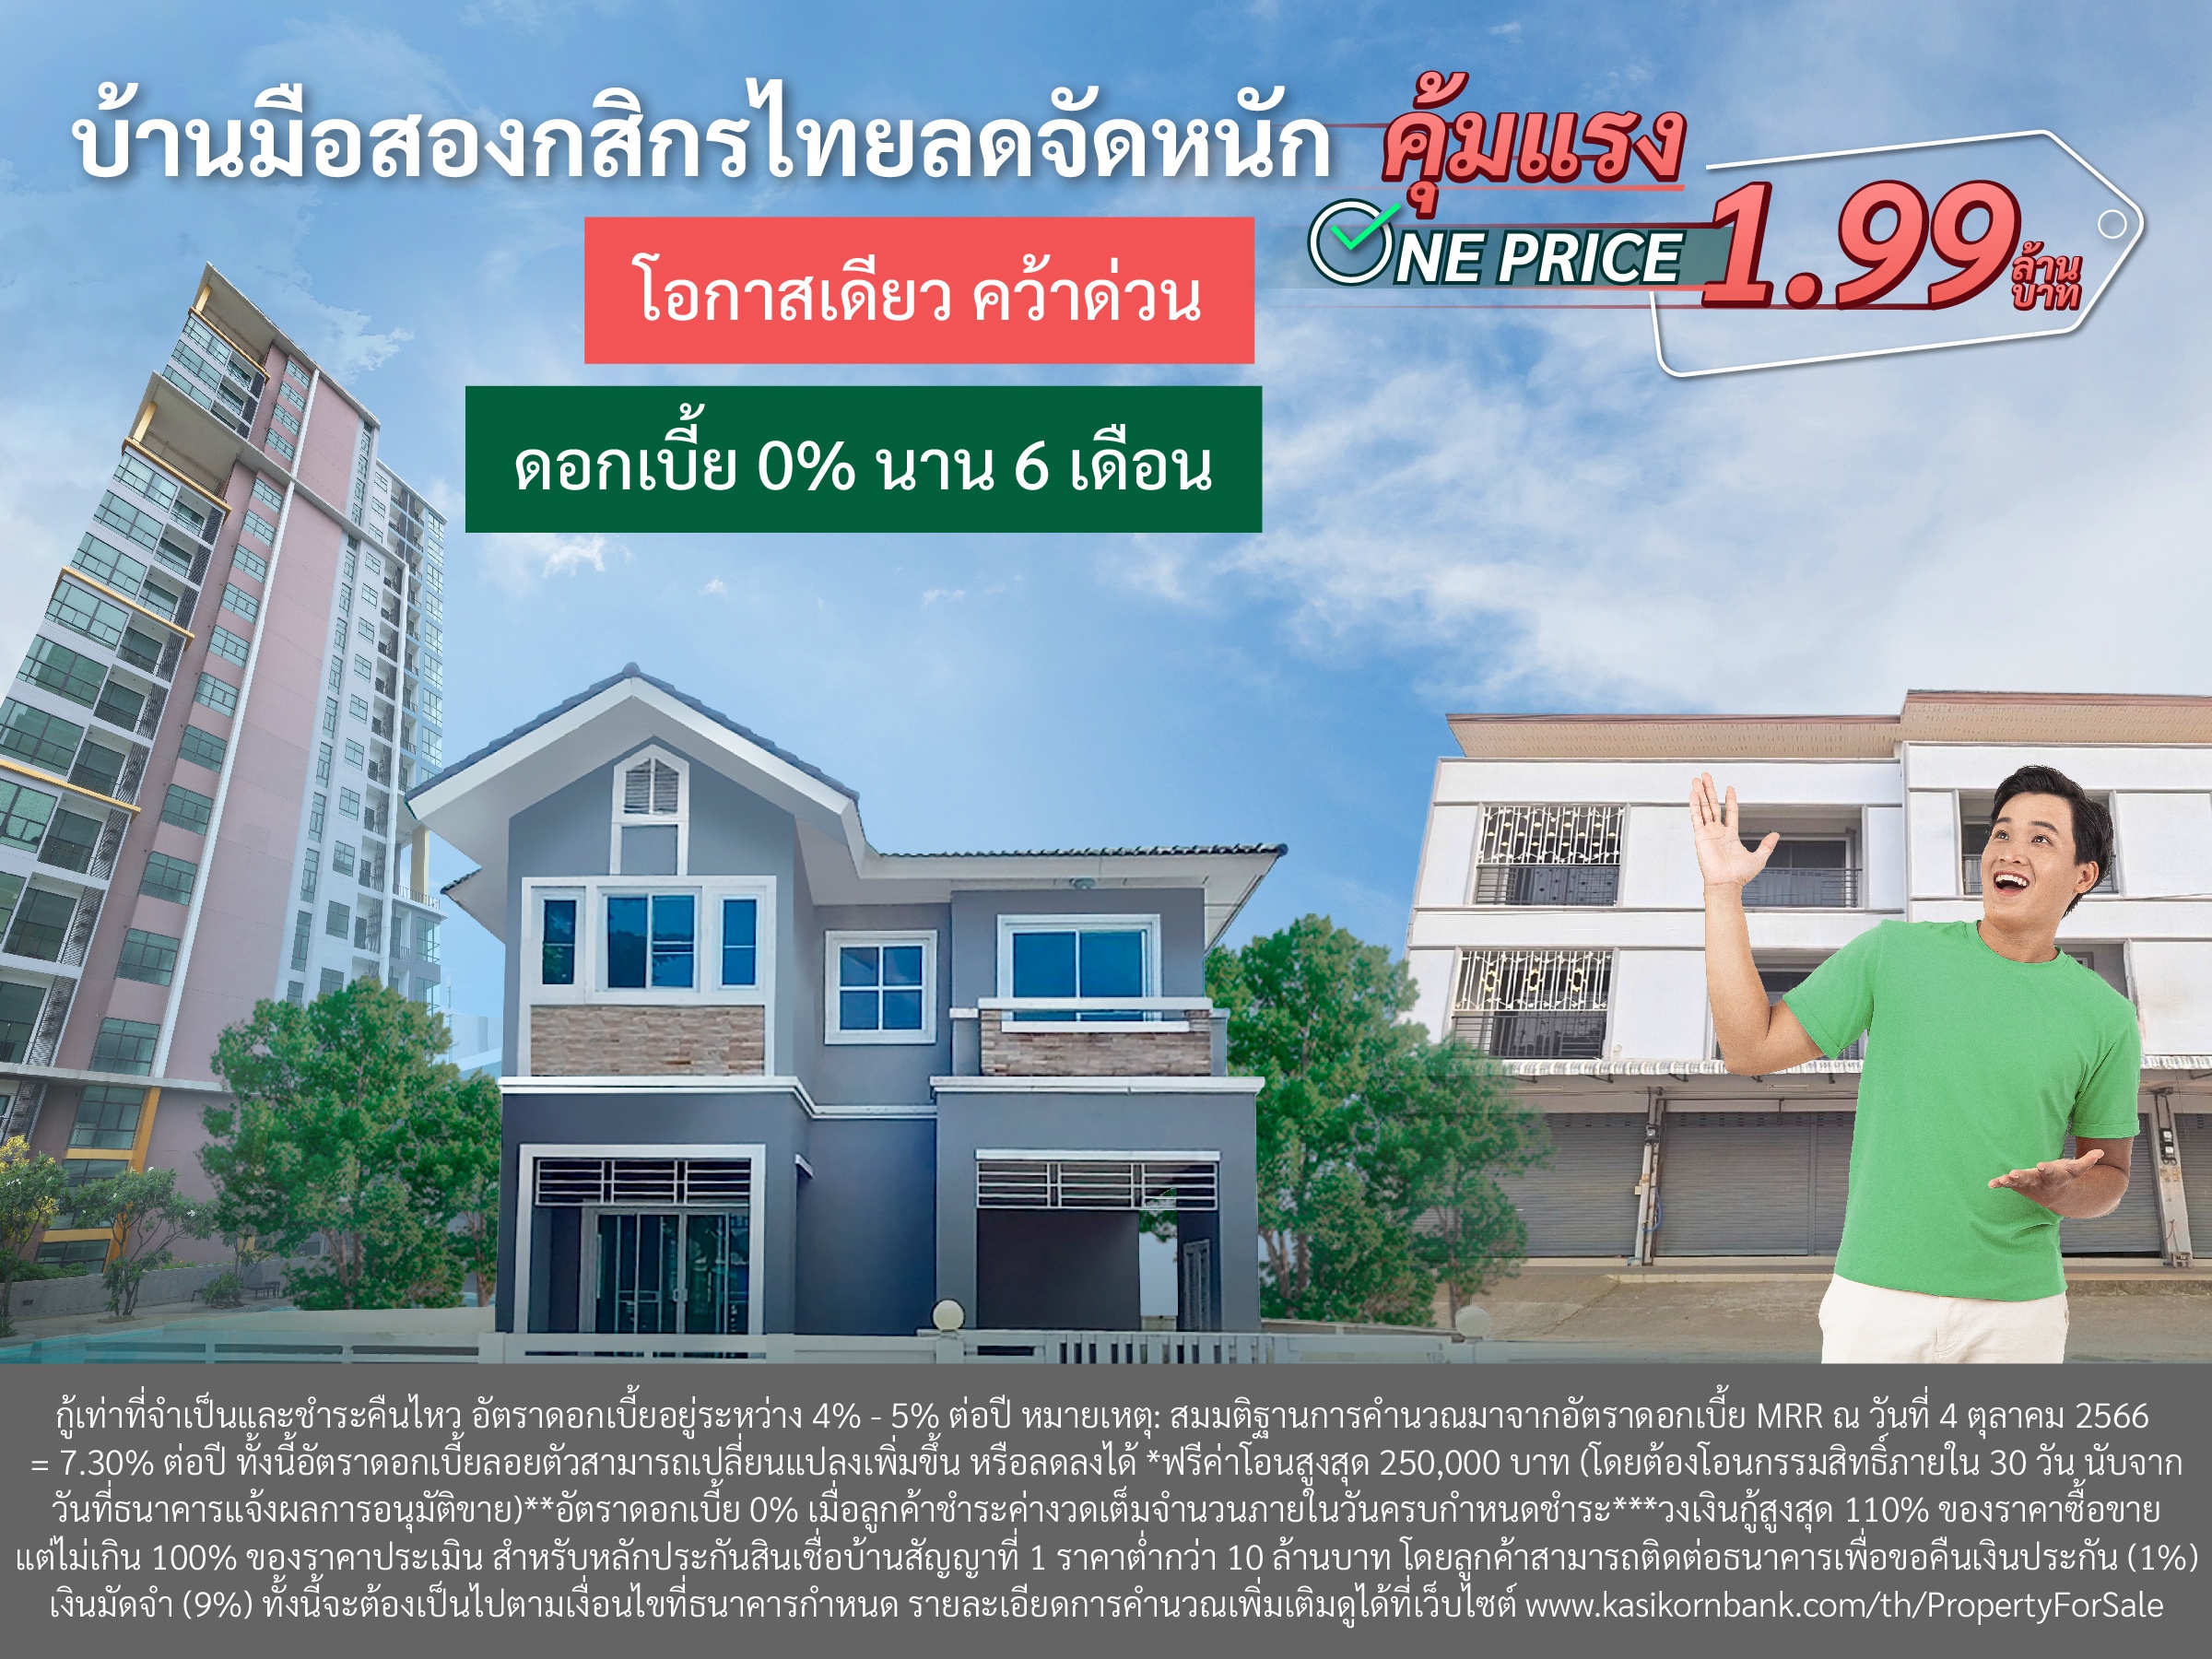 บ้านมือสองกสิกรไทยลดจัดหนัก คุ้มแรง One Price 1.99 ล้านบาท โอกาสเดียว คว้าด่วน  ฟรีโอนสูงสุด 250,000 บาท ดอกเบี้ย 0% นาน 6 เดือน